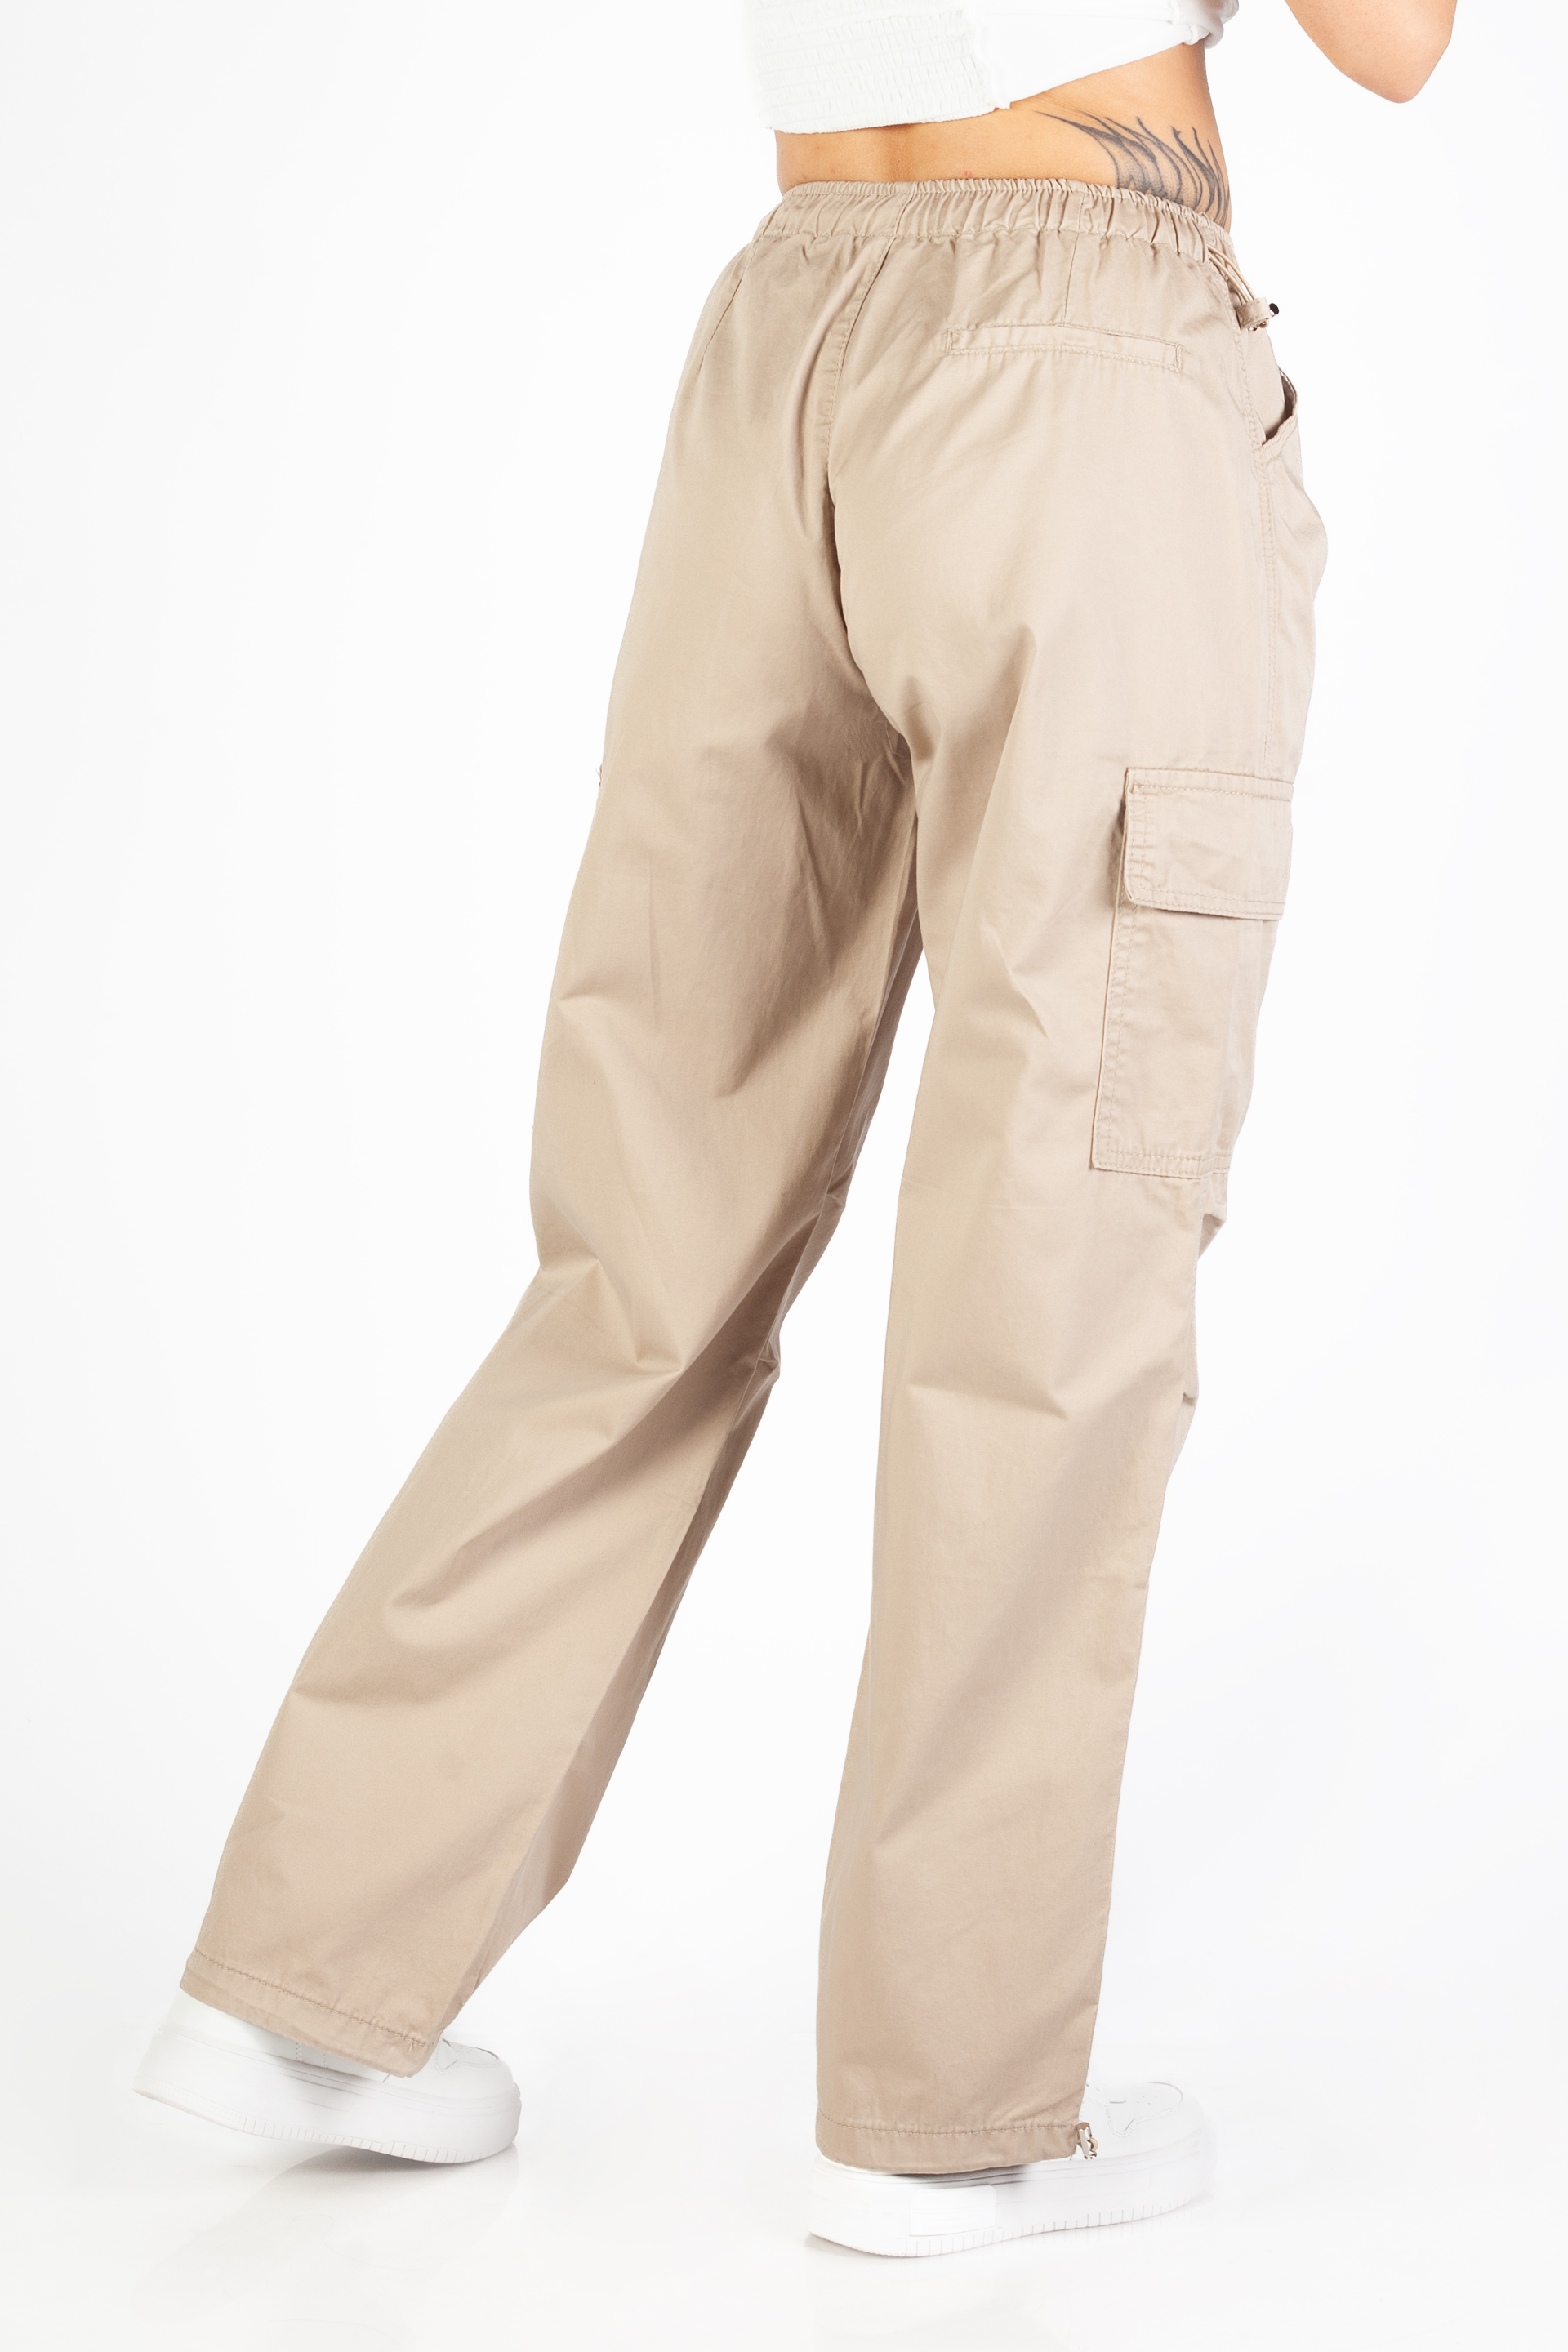 Kangast püksid VS MISS K579-4